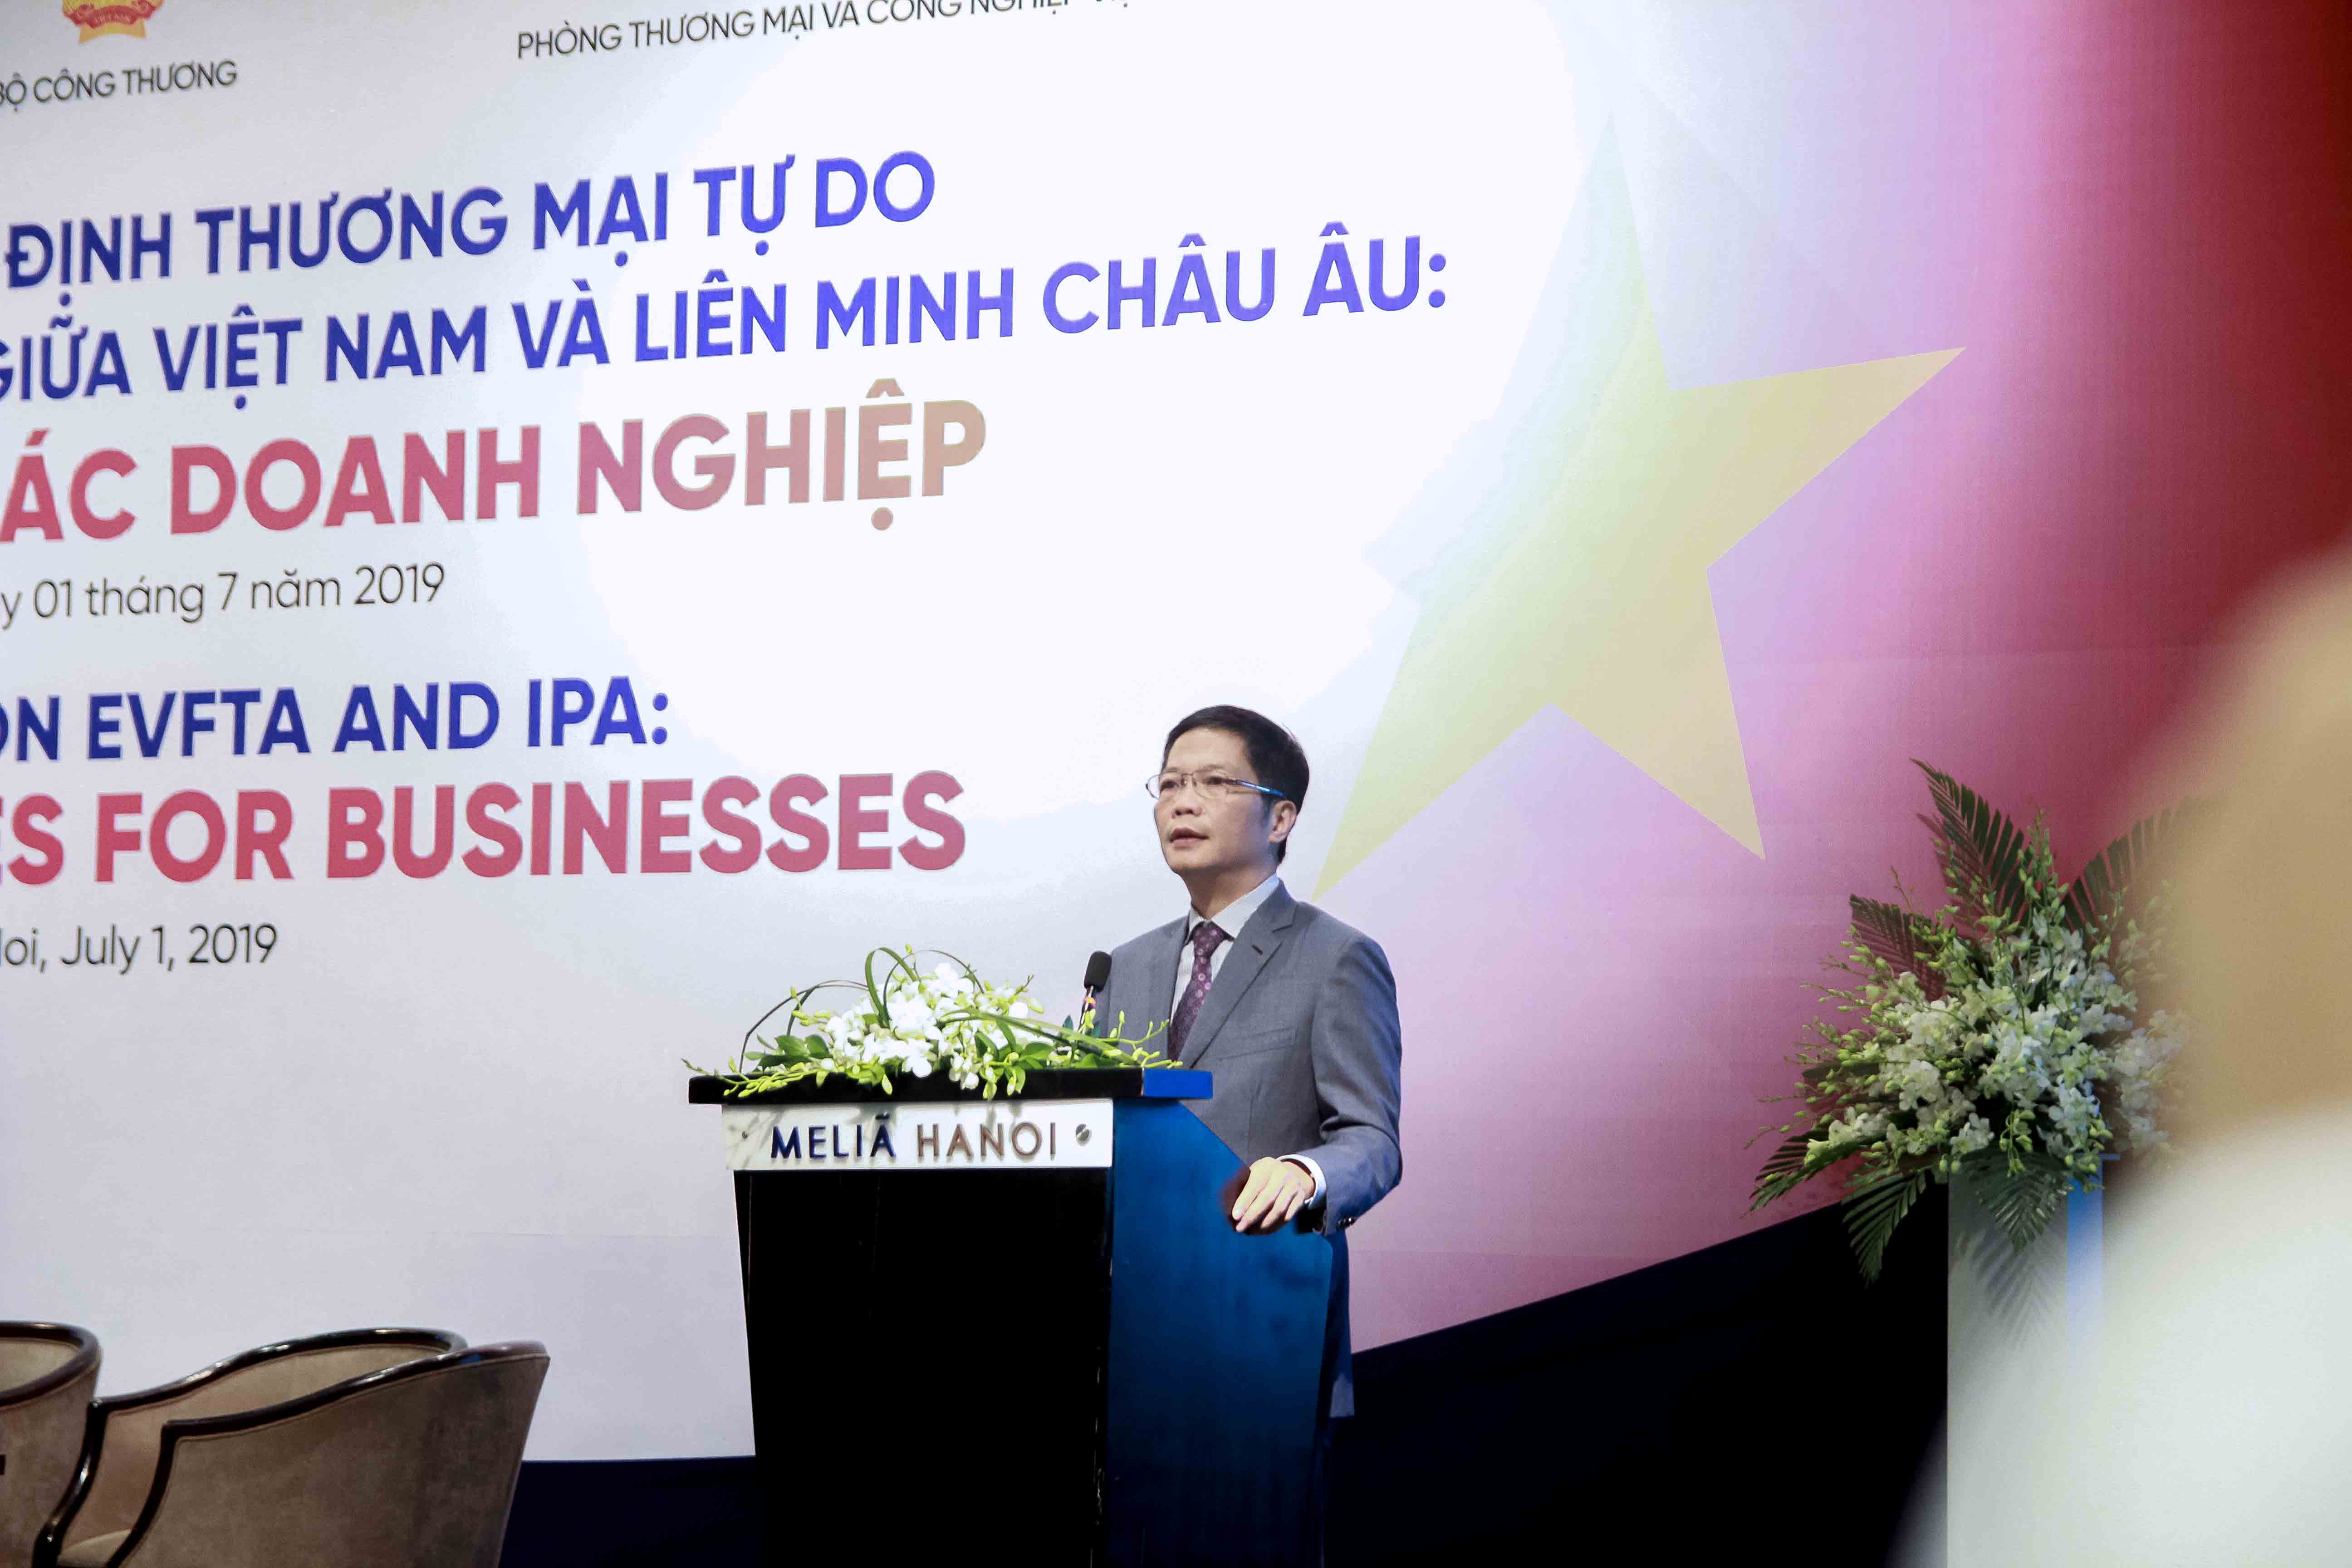 Đối thoại về Hiệp định Thương mại tự do và Hiệp định Bảo hộ đầu tư giữa Việt Nam và Liên minh Châu Âu: Cơ hội cho doanh nghiệp